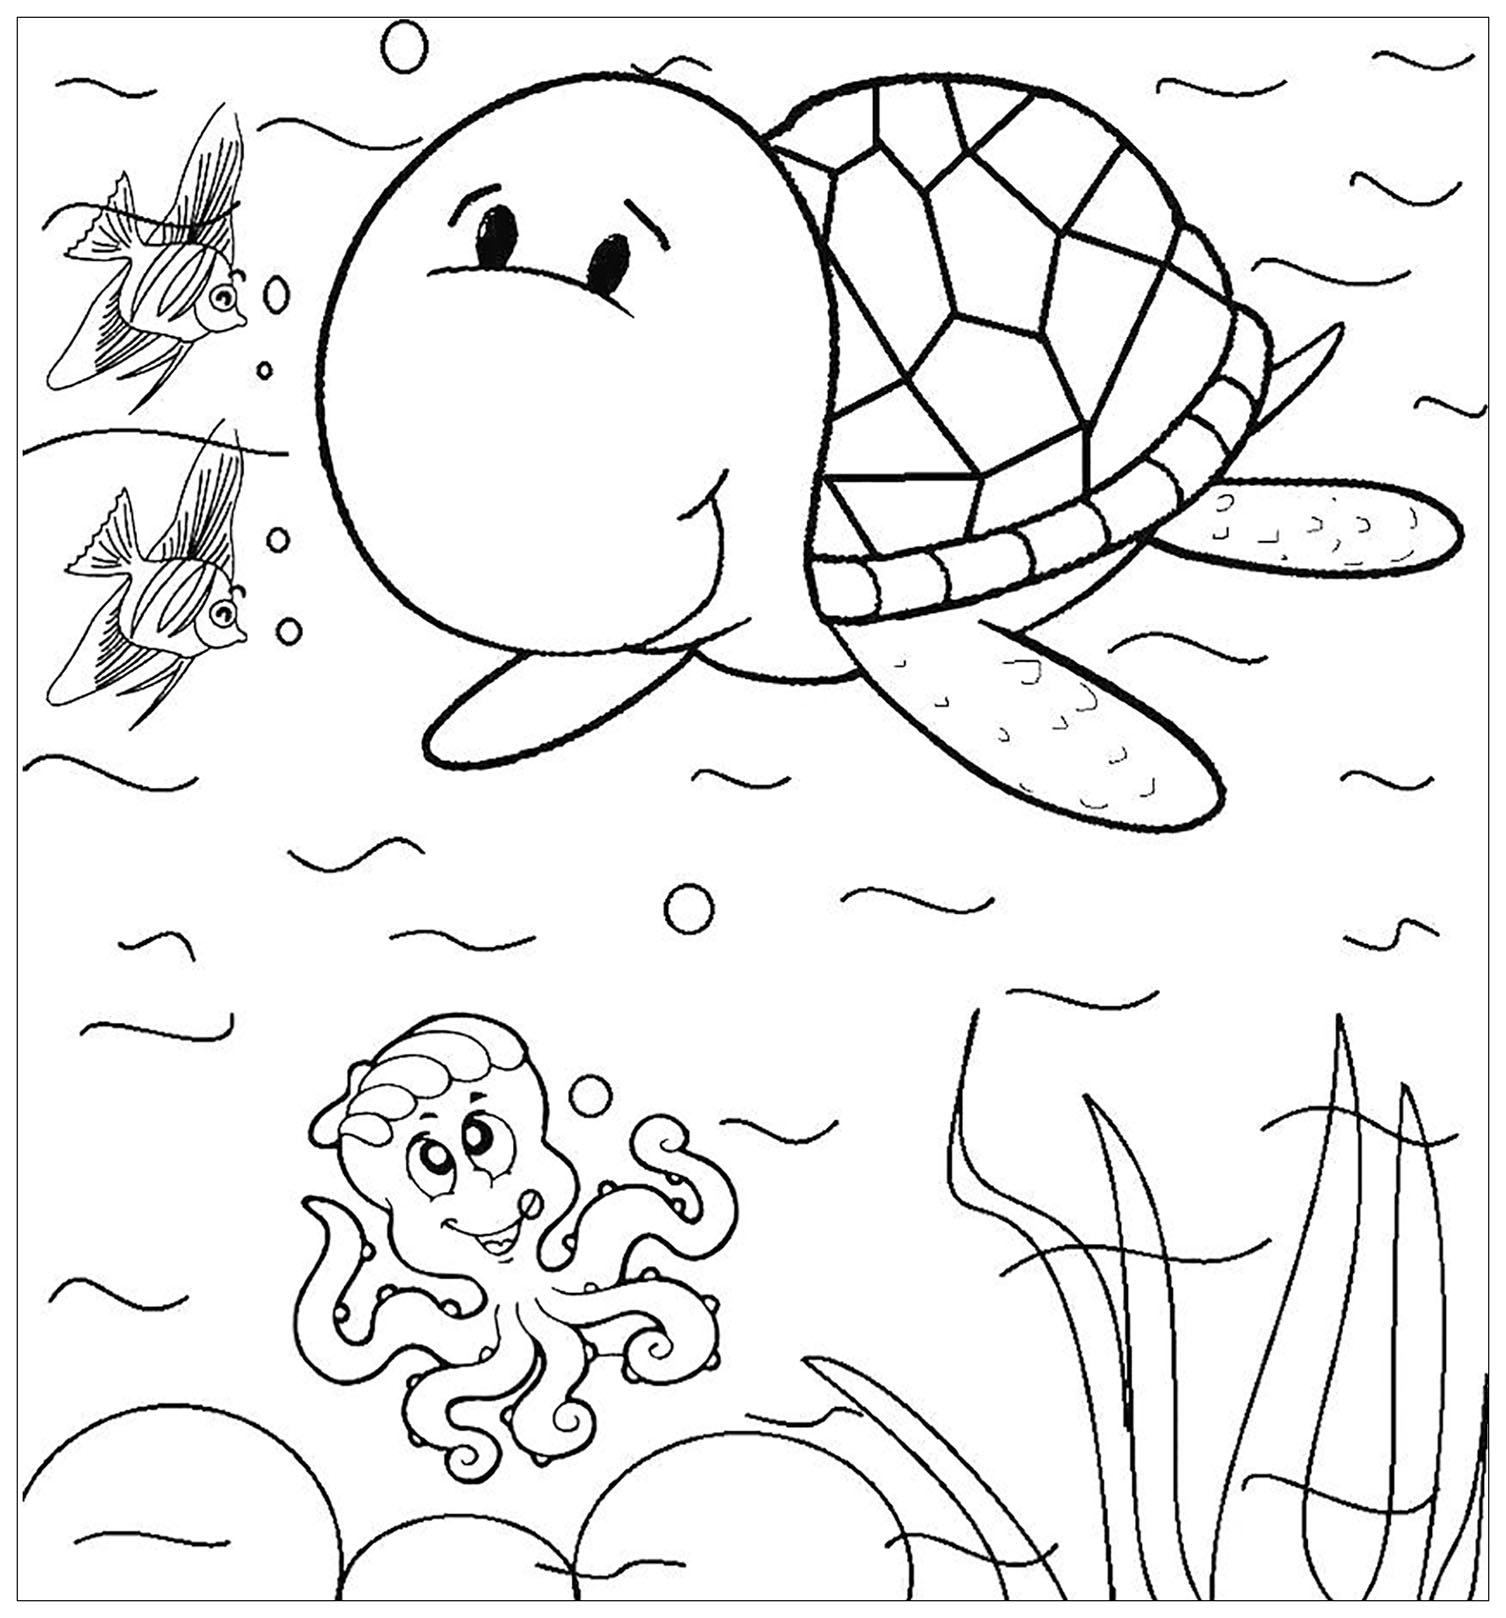 Image de tortue à colorier, facile pour enfants